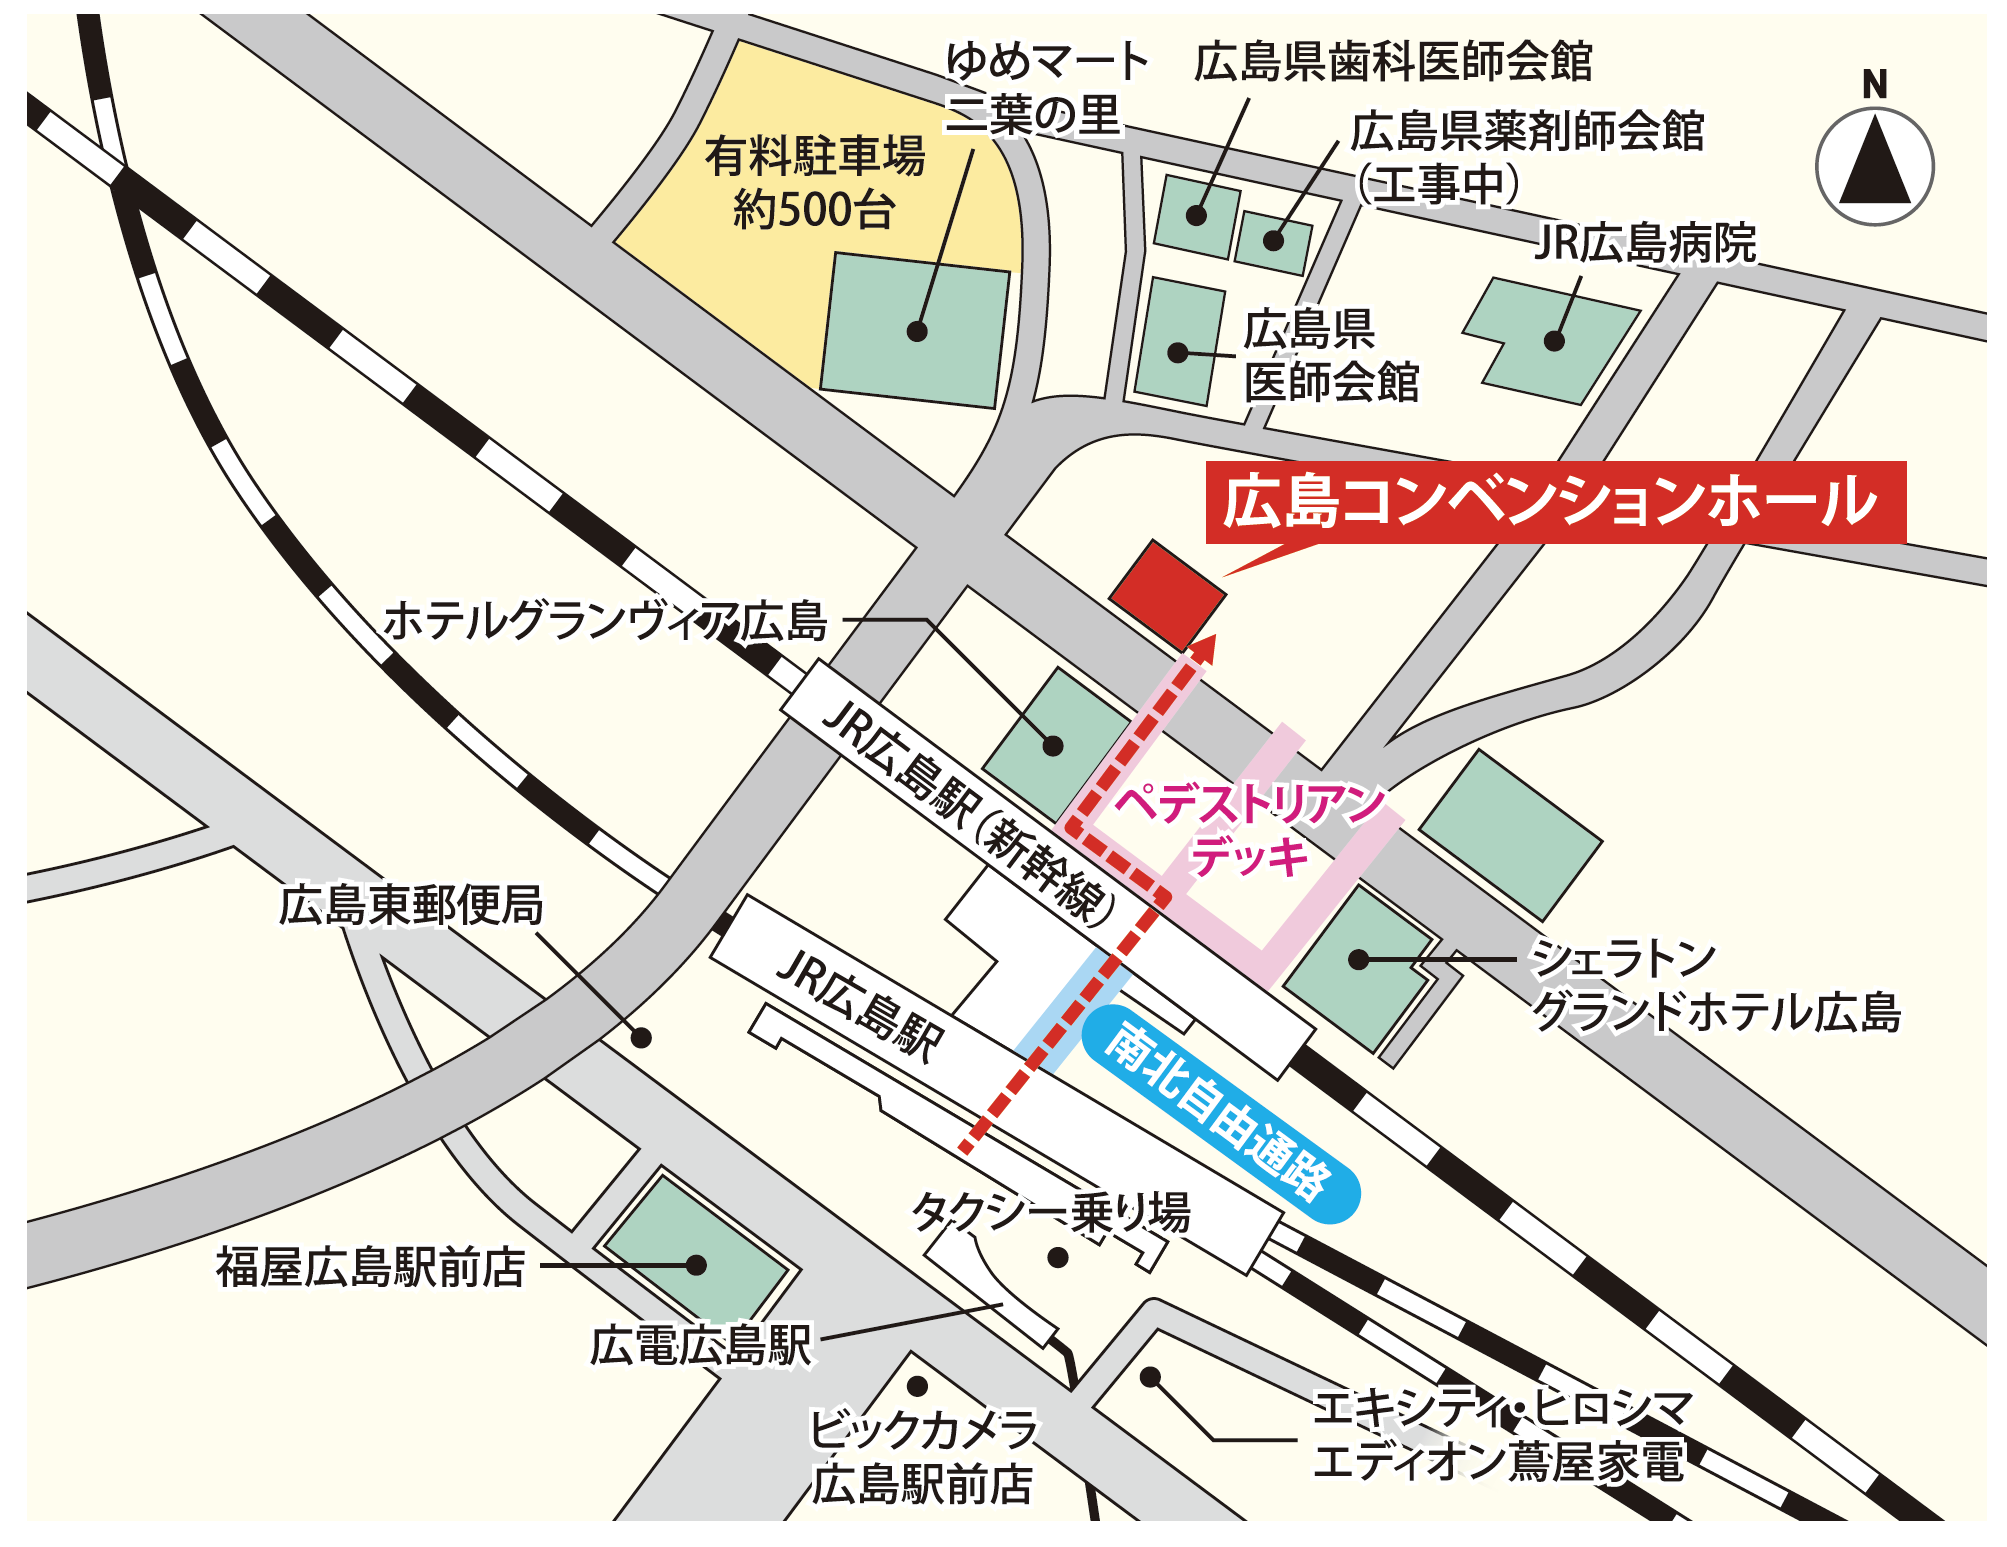 Map_hiroshima